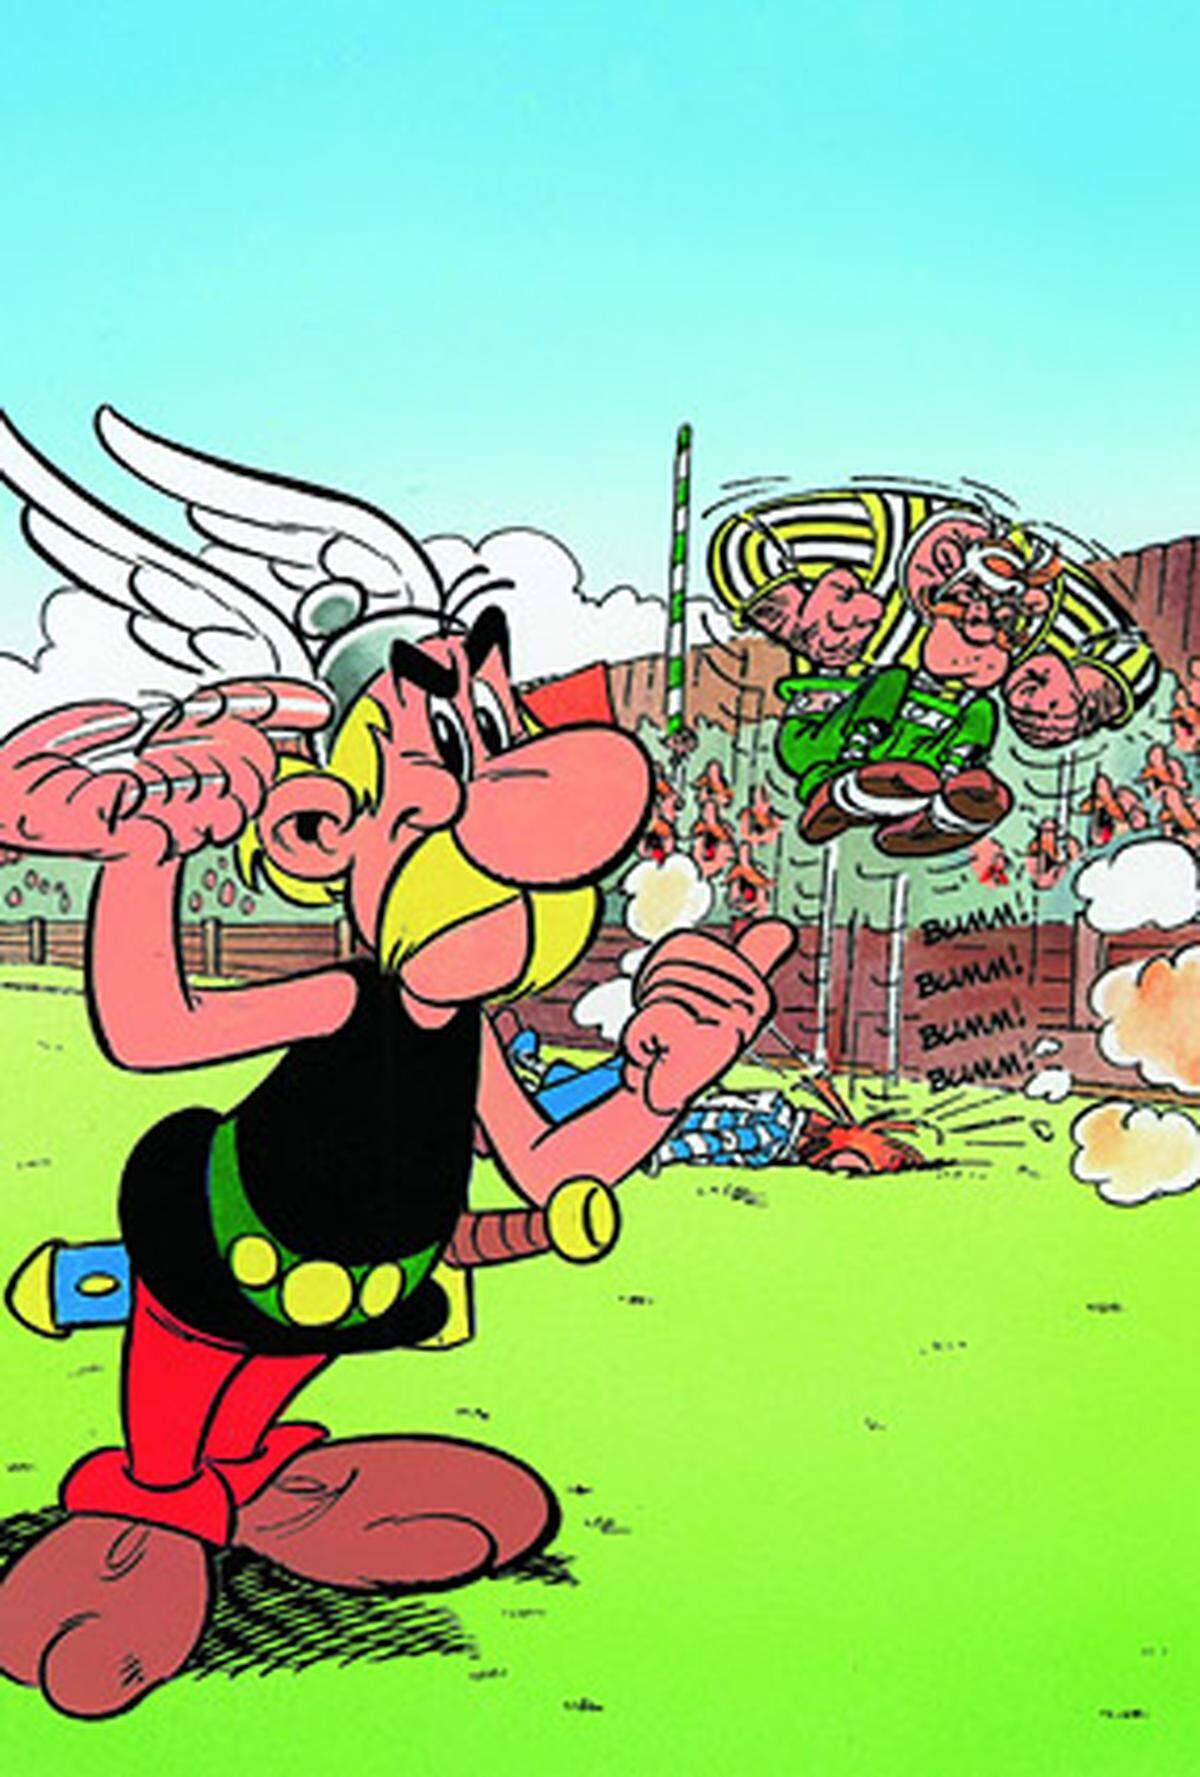 Ein Held sollte Asterix werden, da waren sich die beiden Erfinder einig. "Albert wollte Asterix erst nach traditioneller Vorstellung als heldenhaften Muskelmann zeichnen", erinnert sich René Goscinny später. "Meine Idee war genau das Gegenteil: ich wollte einen Antihelden, einen kleinen Kerl." Genau das wurde Asterix auch - ein moderner David, der ganz schön stark werden kann.